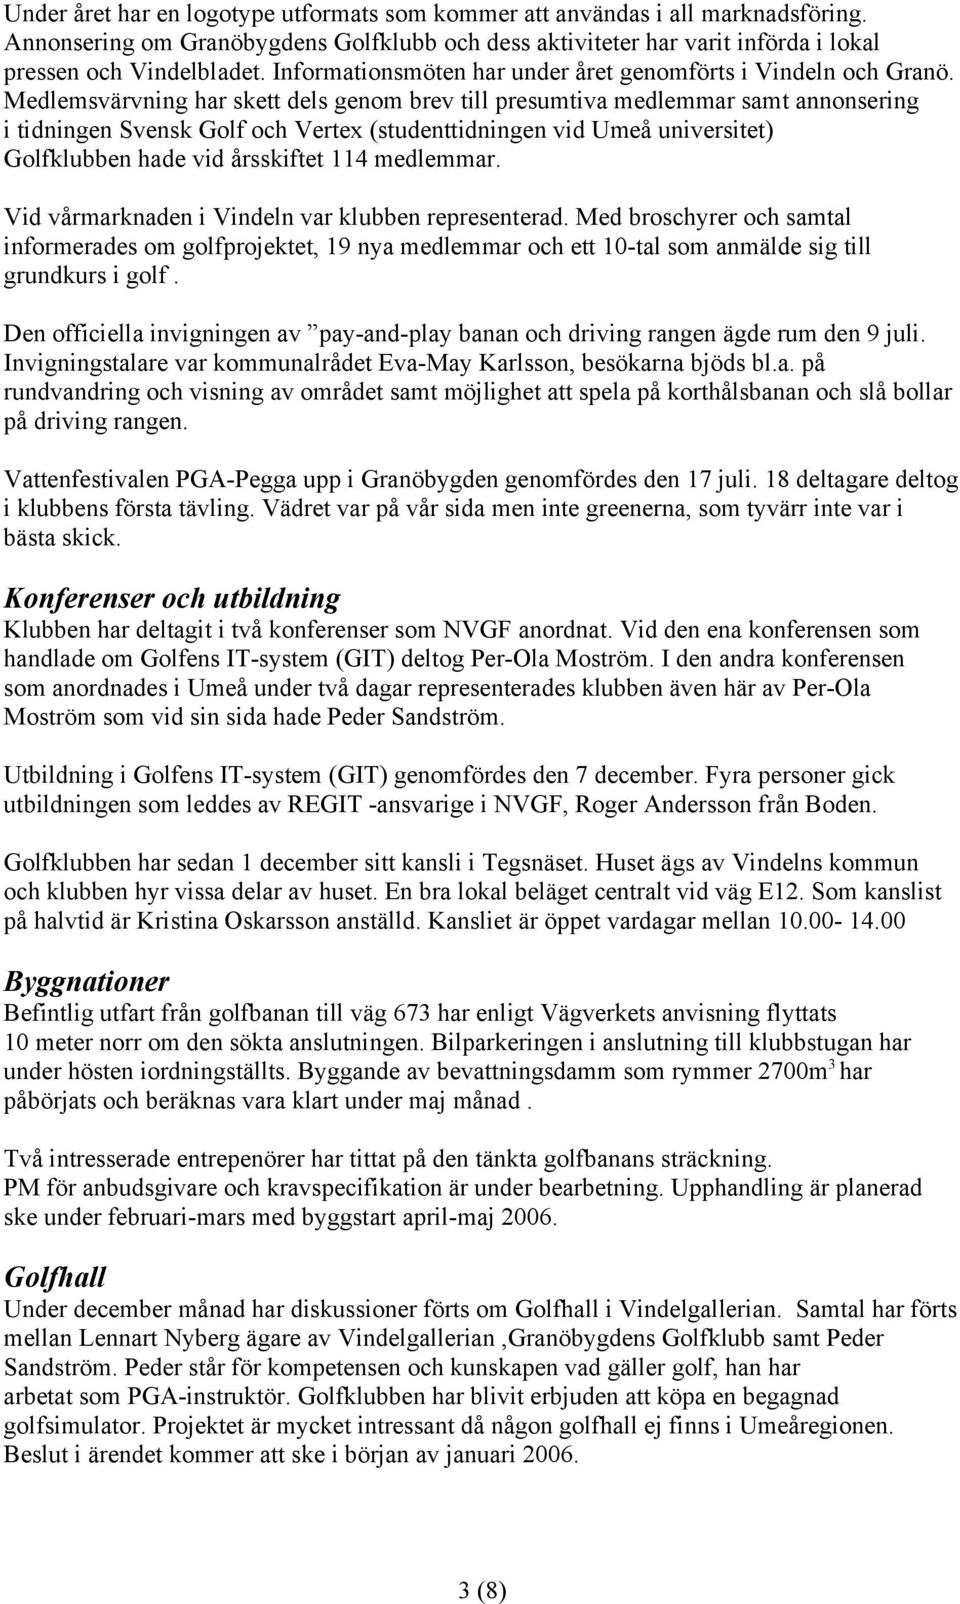 Medlemsvärvning har skett dels genom brev till presumtiva medlemmar samt annonsering i tidningen Svensk Golf och Vertex (studenttidningen vid Umeå universitet) Golfklubben hade vid årsskiftet 114